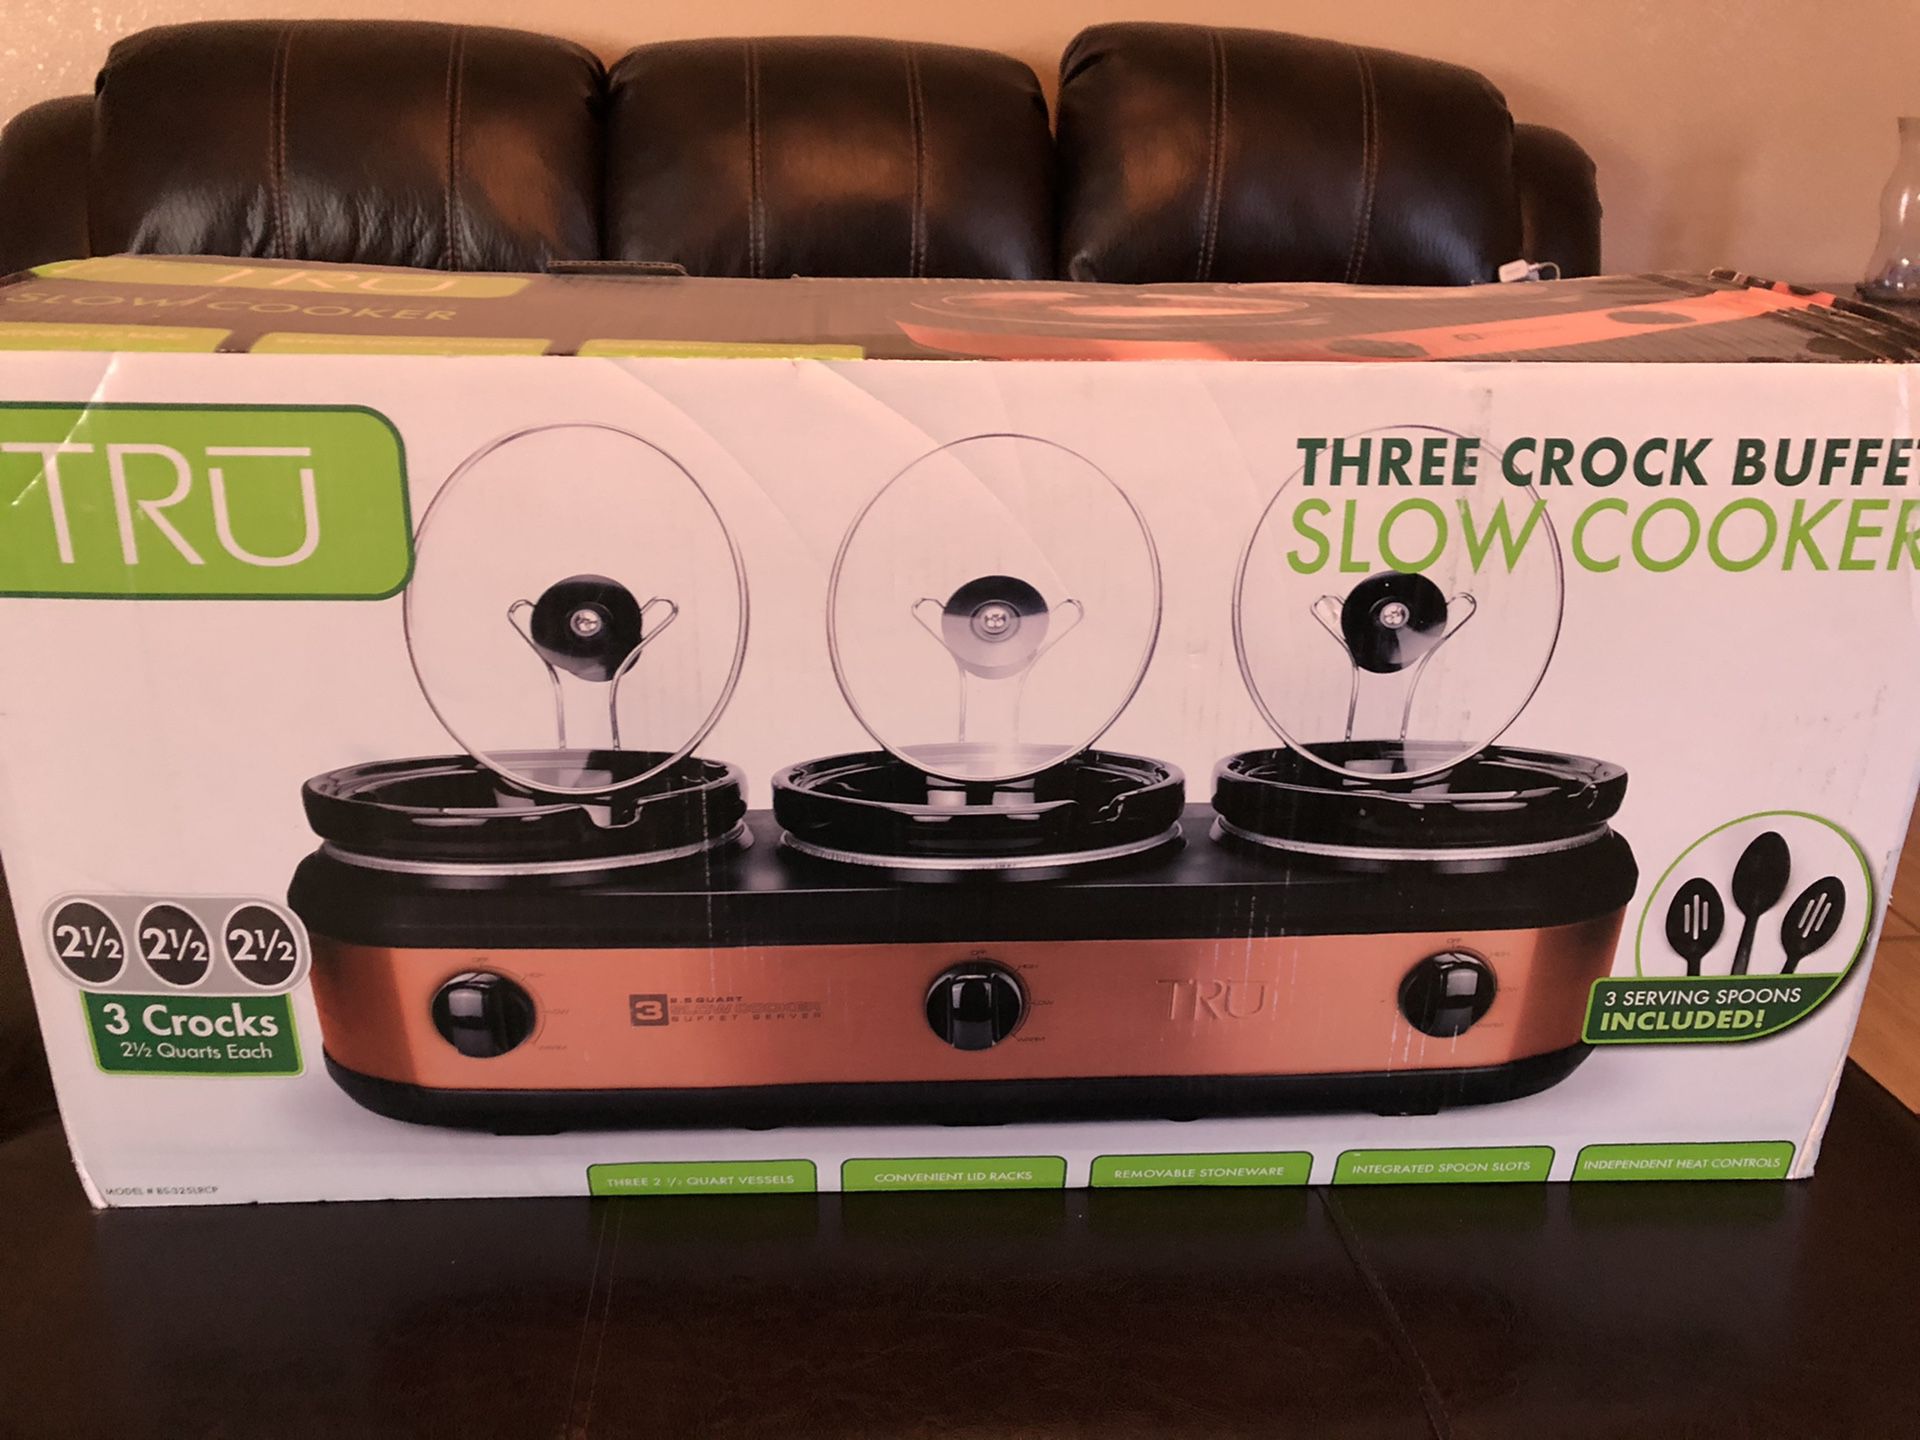 Three crock pot slow cooker